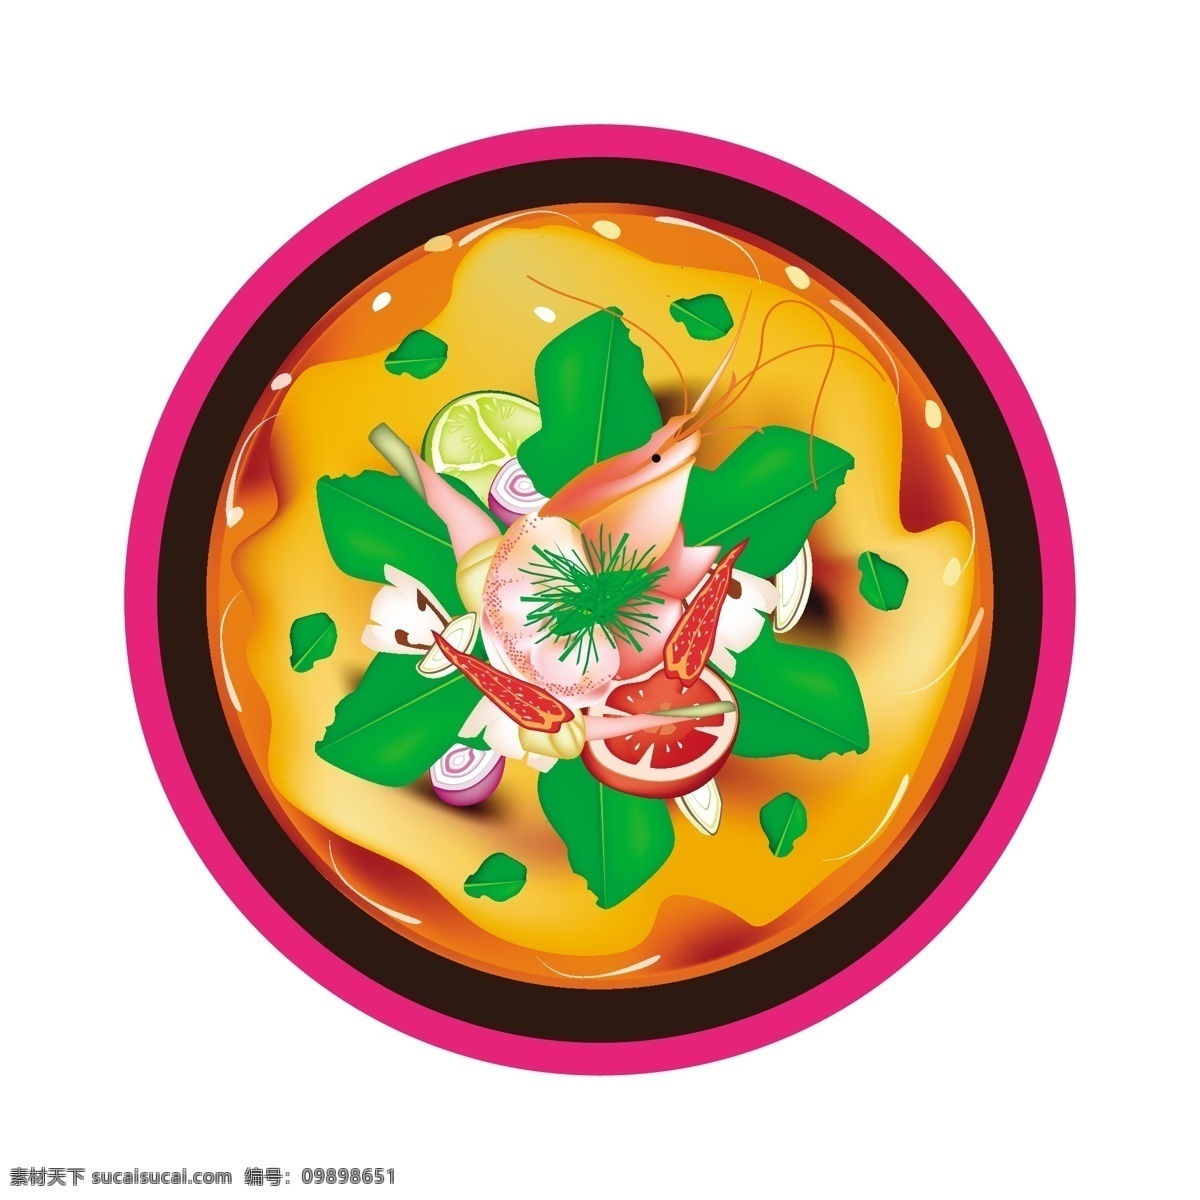 卡通 手绘 美味 食物 矢量 海鲜 龙虾 砂锅 高汤 中式 日式 鸡蛋 面条 动漫 菜肴